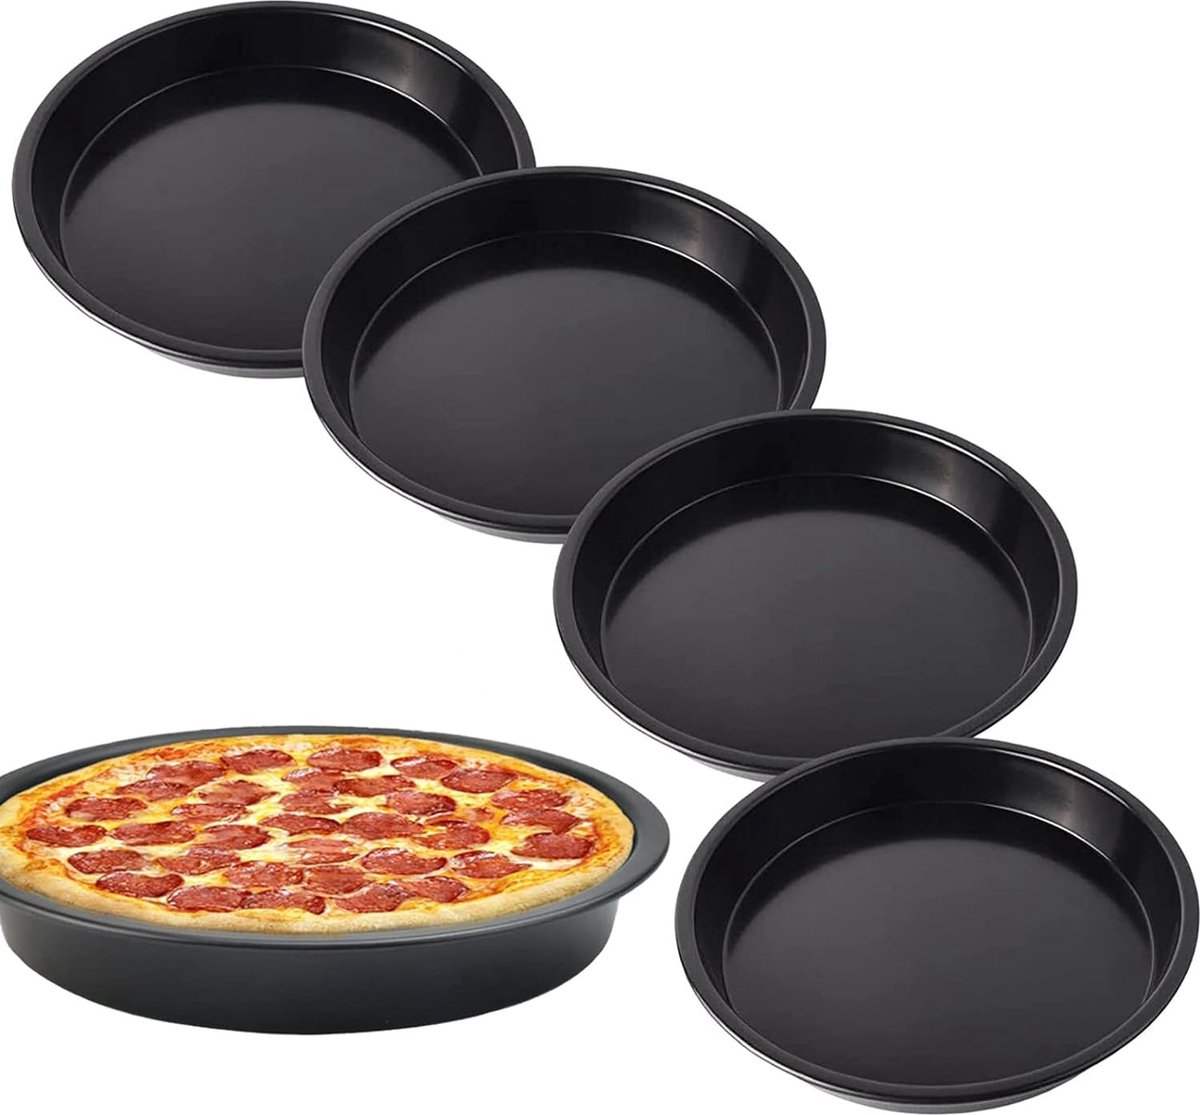 Set van 4 pizzaplaten, pizzaborden, bakvorm, 18 cm rond, quiche bakvorm, pizzabakplaat van gecoat koolstofstaal, antiaanbaklaag Pizzabakplaten set voor pizza, taart